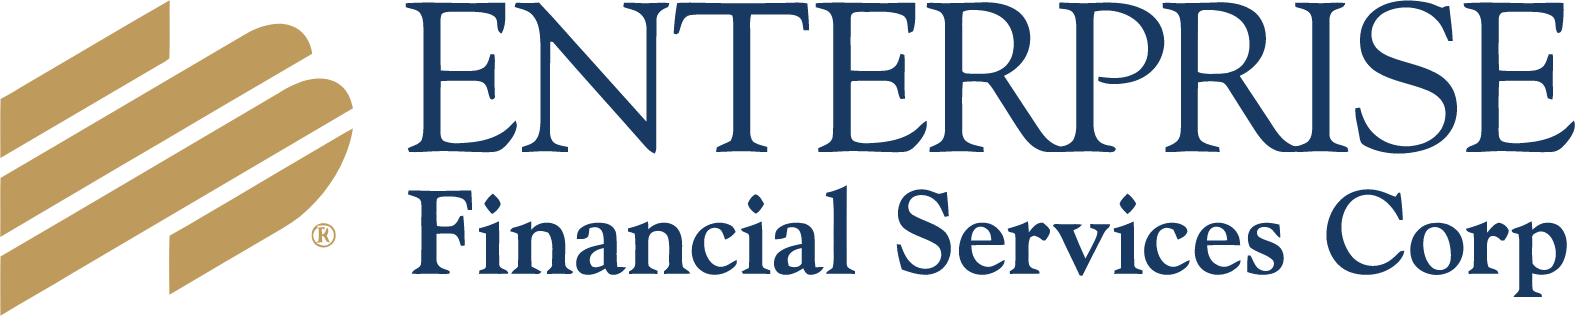 Enterprise Financial Services Corp logo large (transparent PNG)